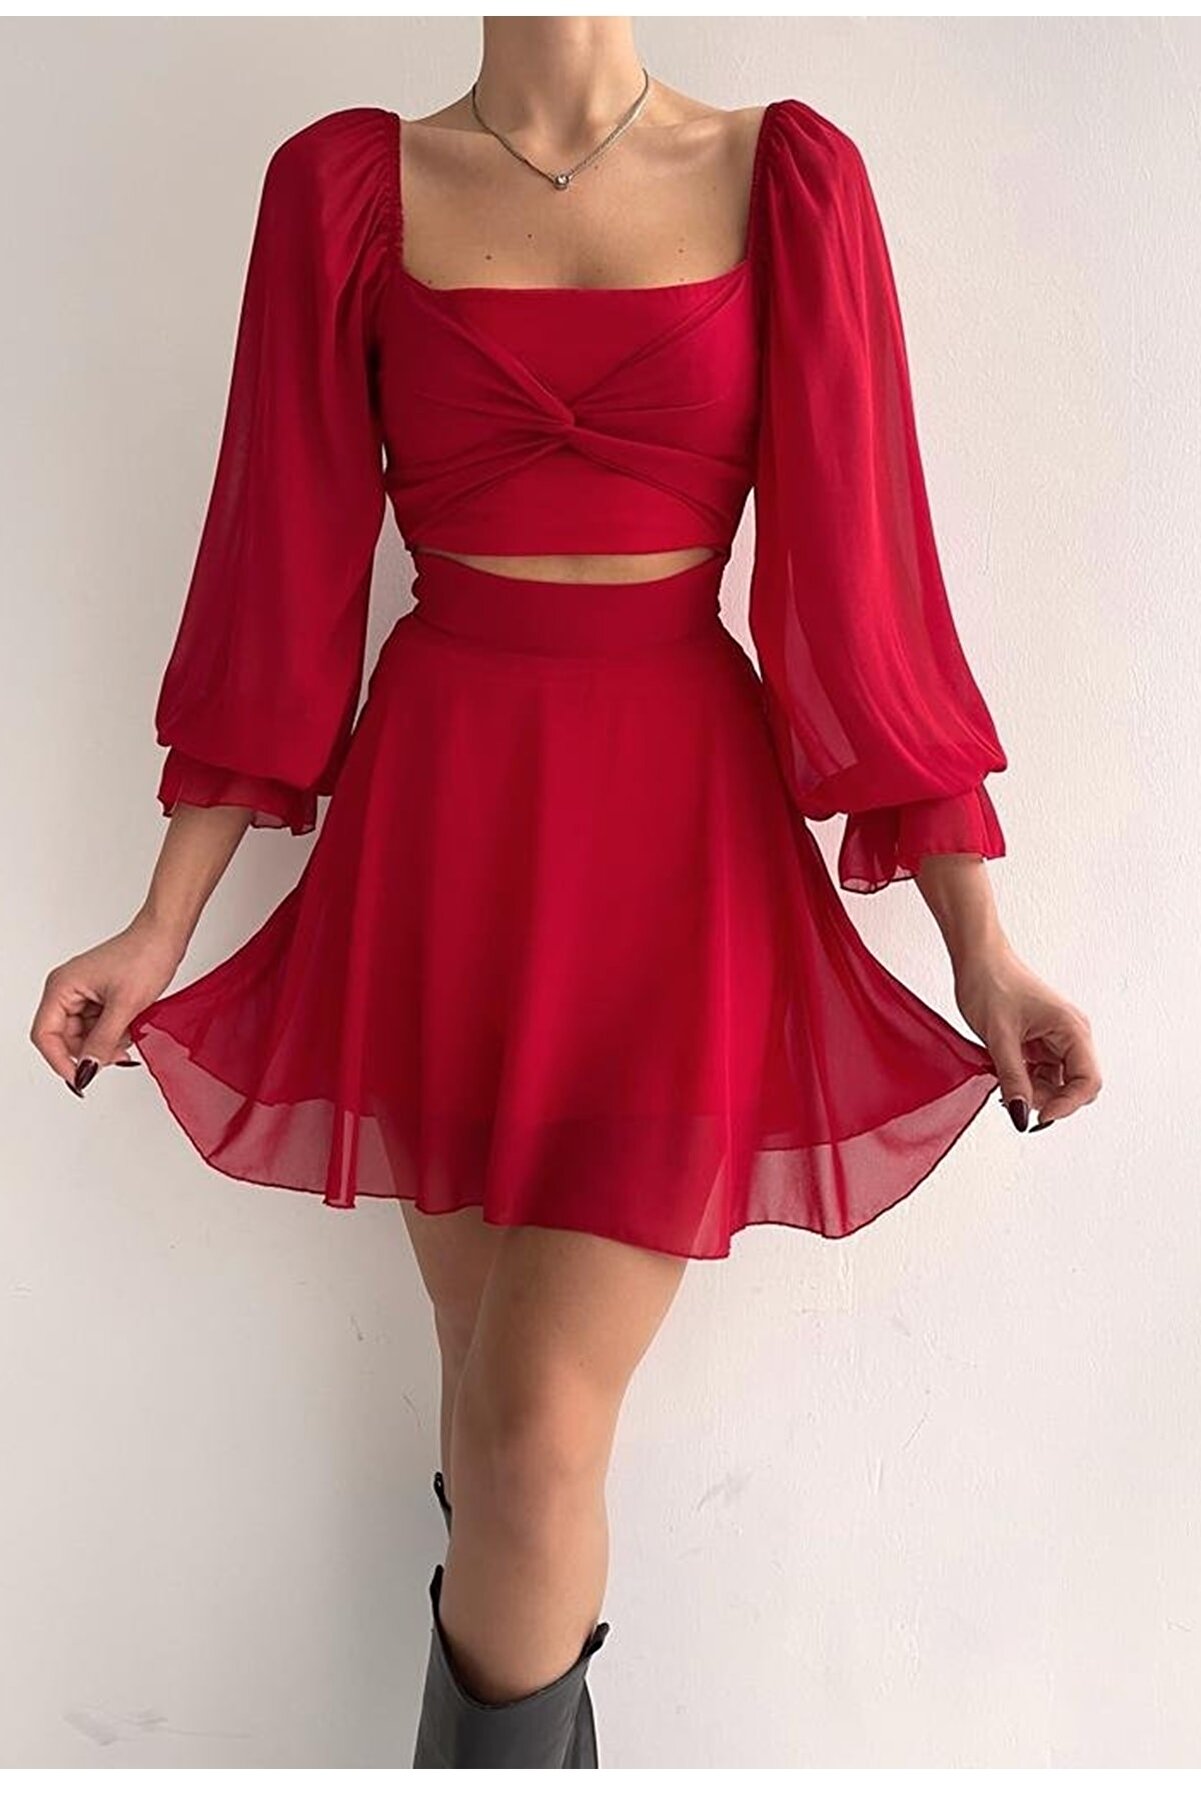 lovebox Etek Ve Üst Görünümlü Astarlı Şifon Kumaş Tek Parça Kısa Kırmızı Abiye Elbise 013